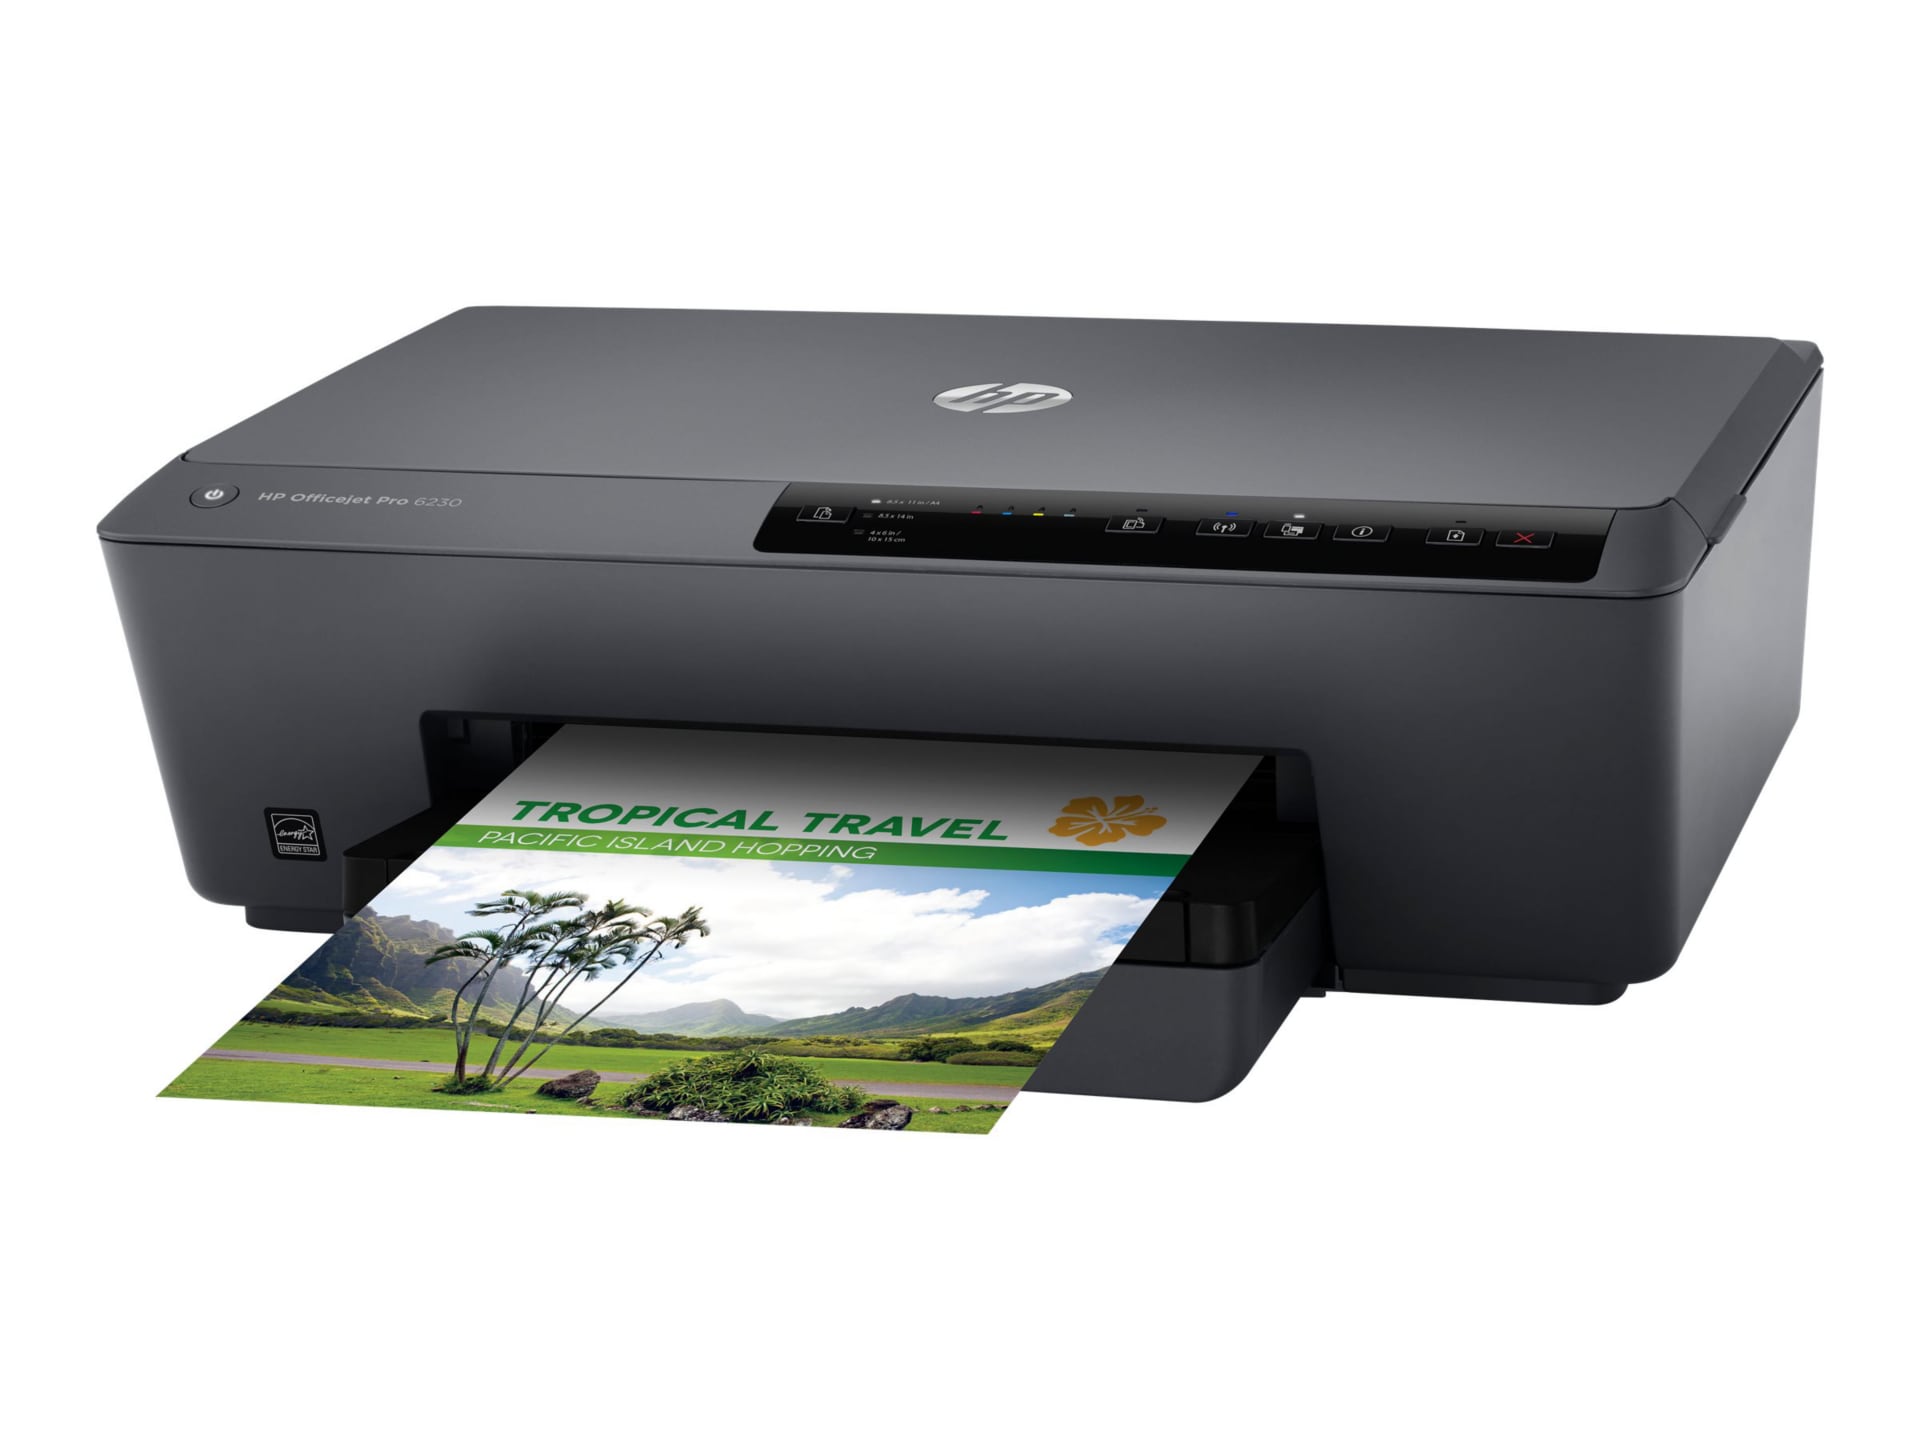 Used HP Officejet Pro 6230 Wireless Color Inkjet Printer - SKU#1601466  E3E03A